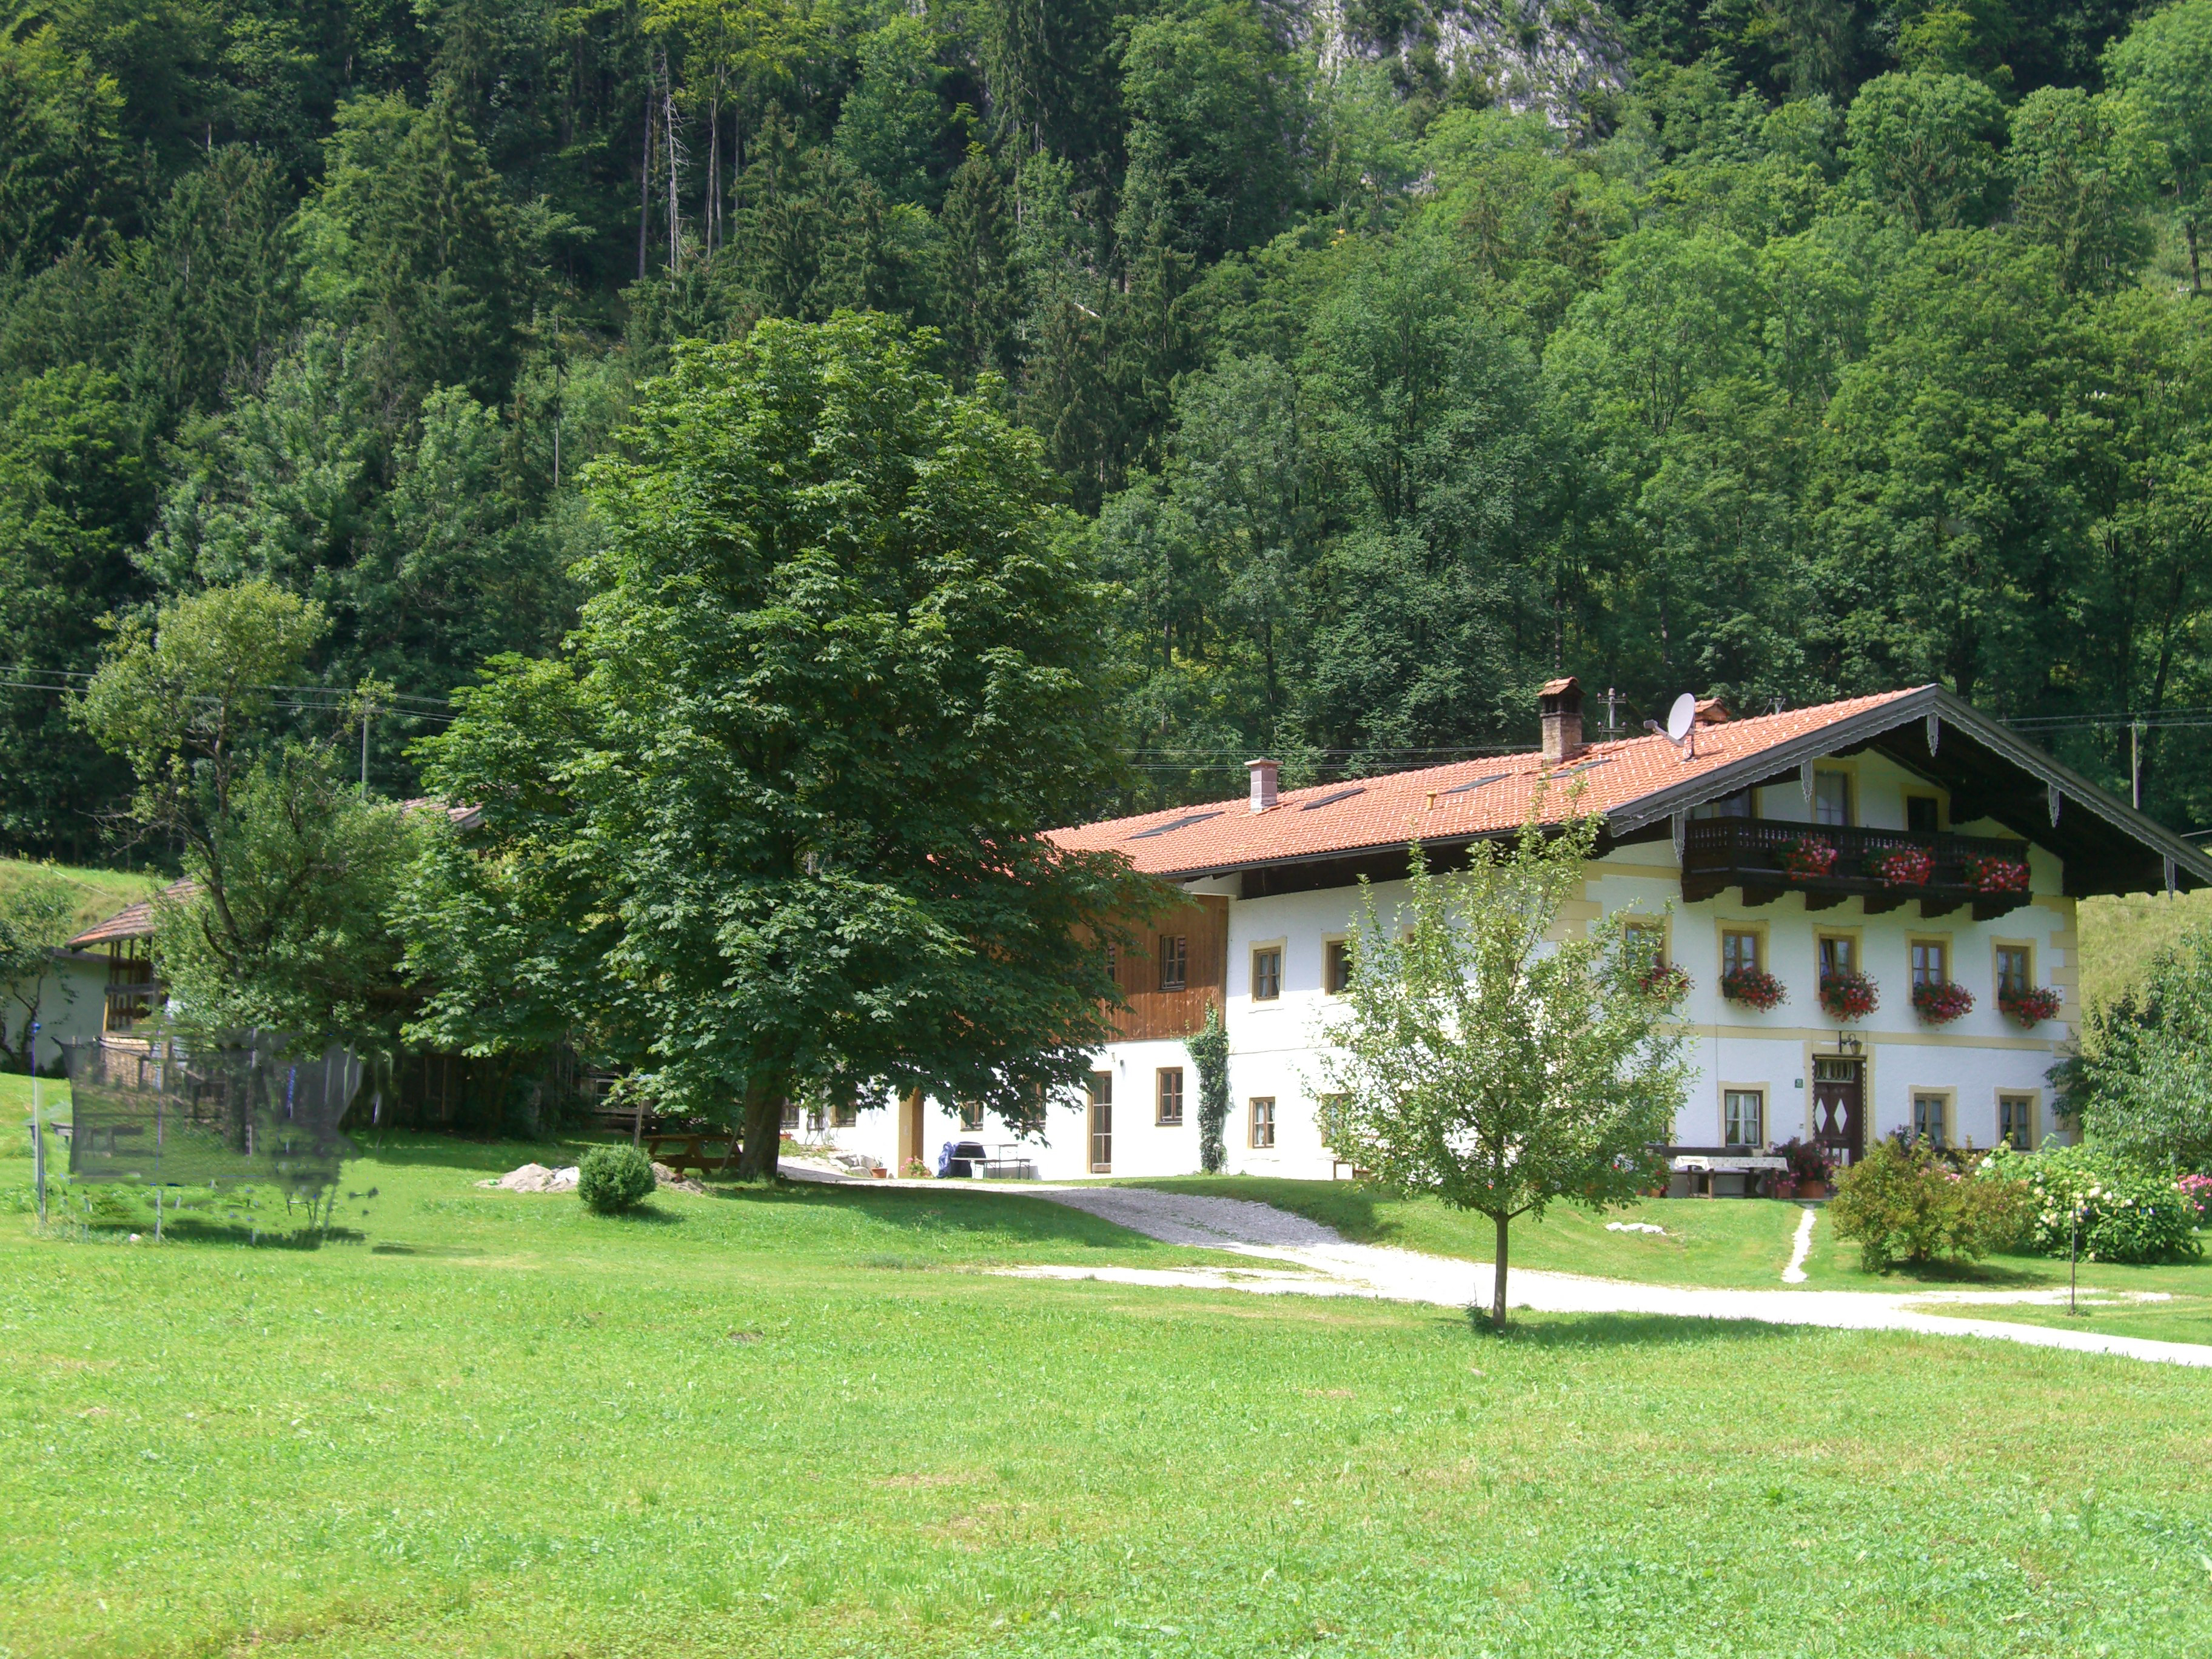 Ferienwohnungen Landinger (DE Aschau im Chiemgau). Ferienwohnung in den Alpen